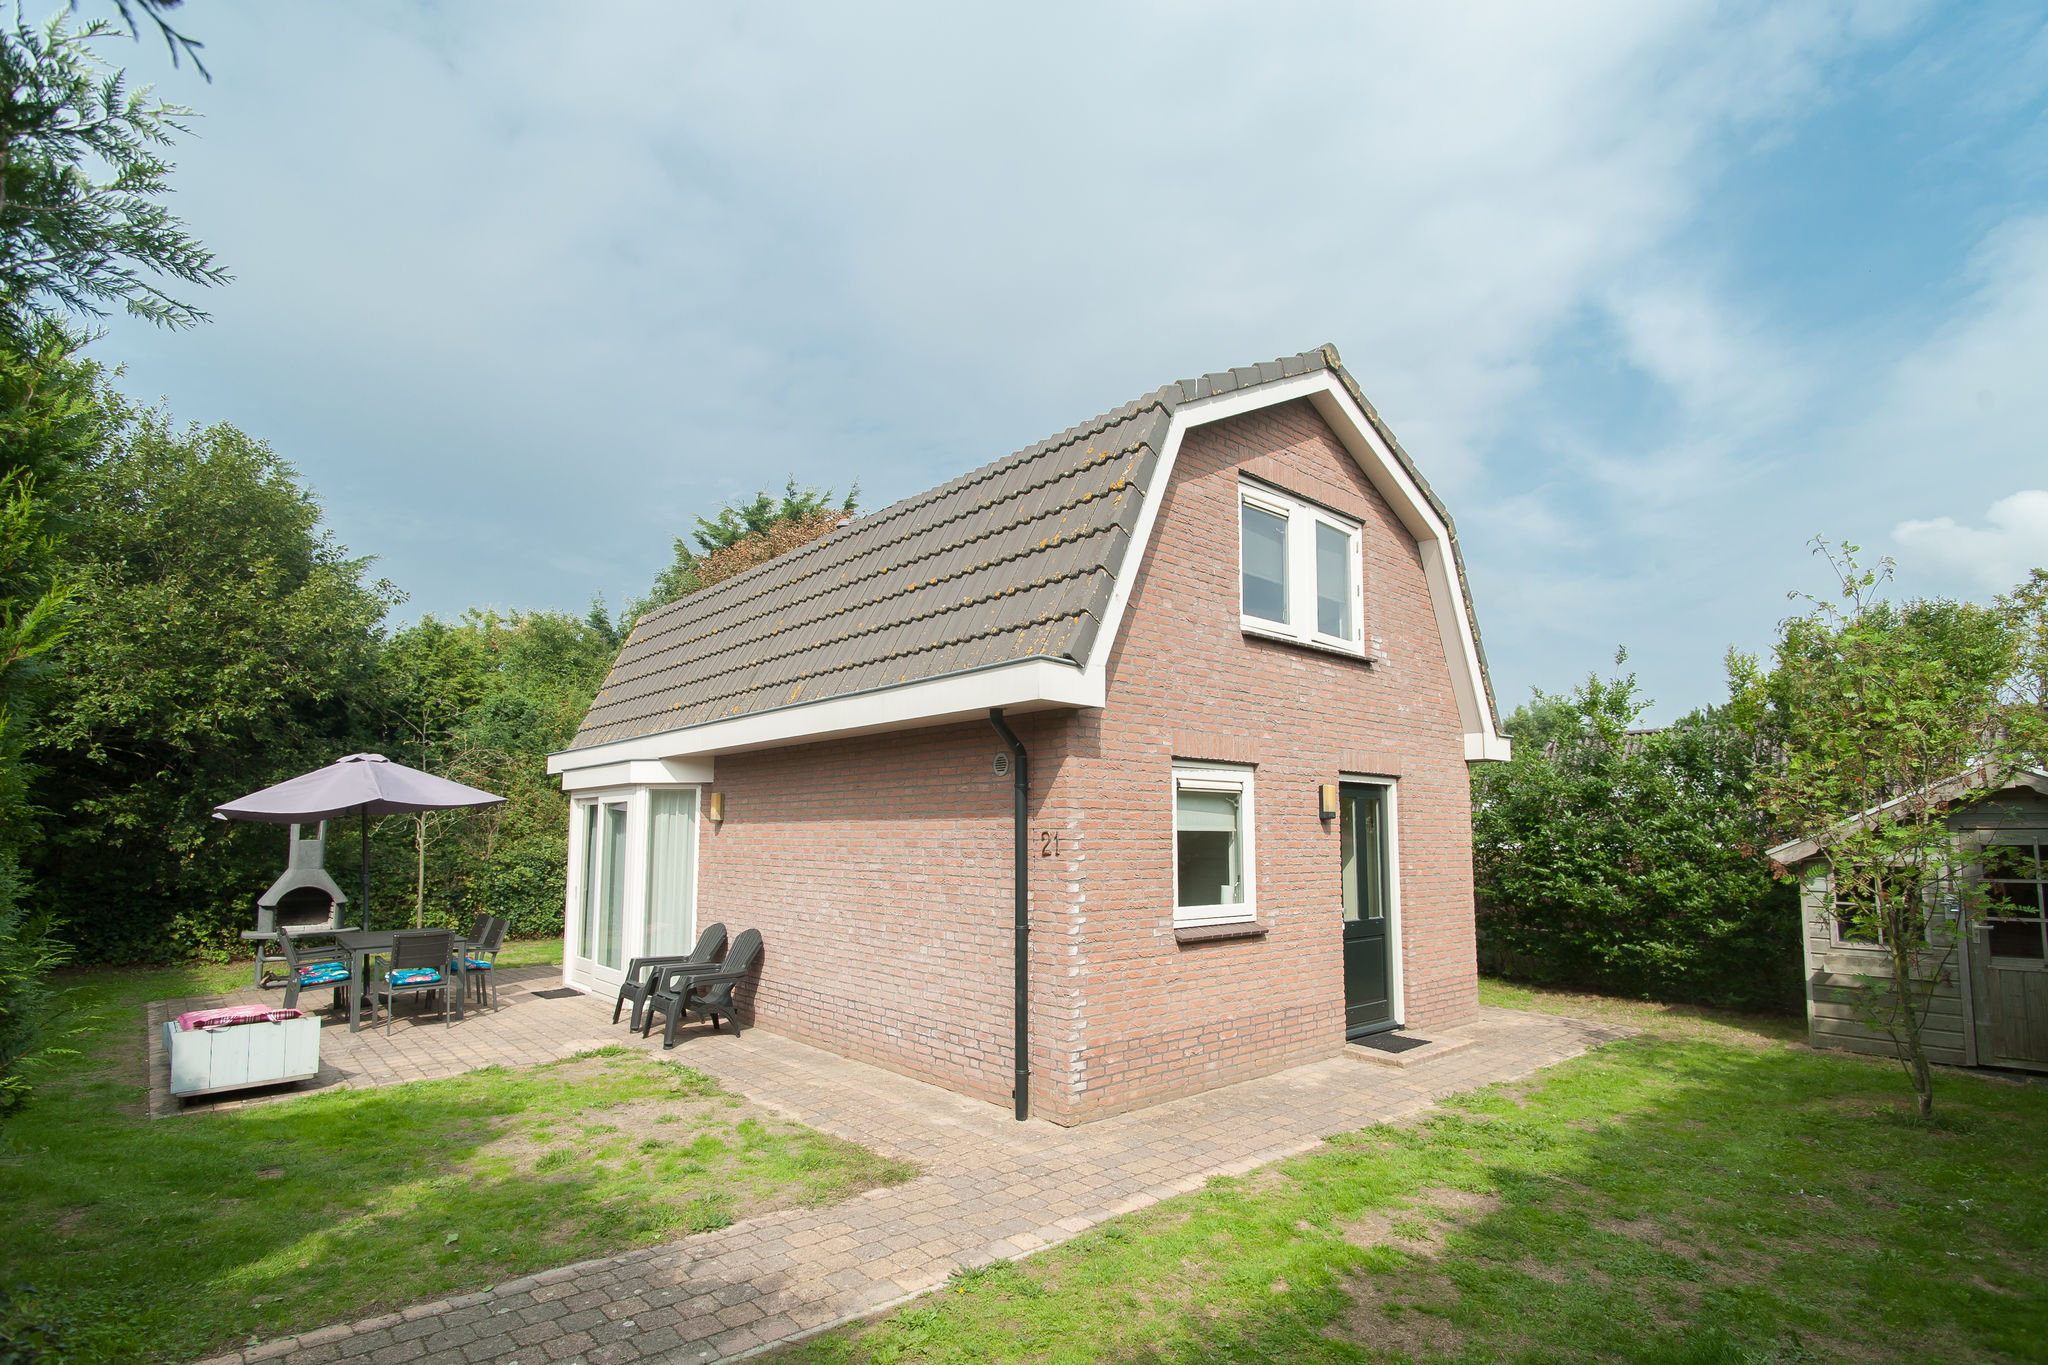 Ferienhaus in Noordwijk in der Nähe des Meeres